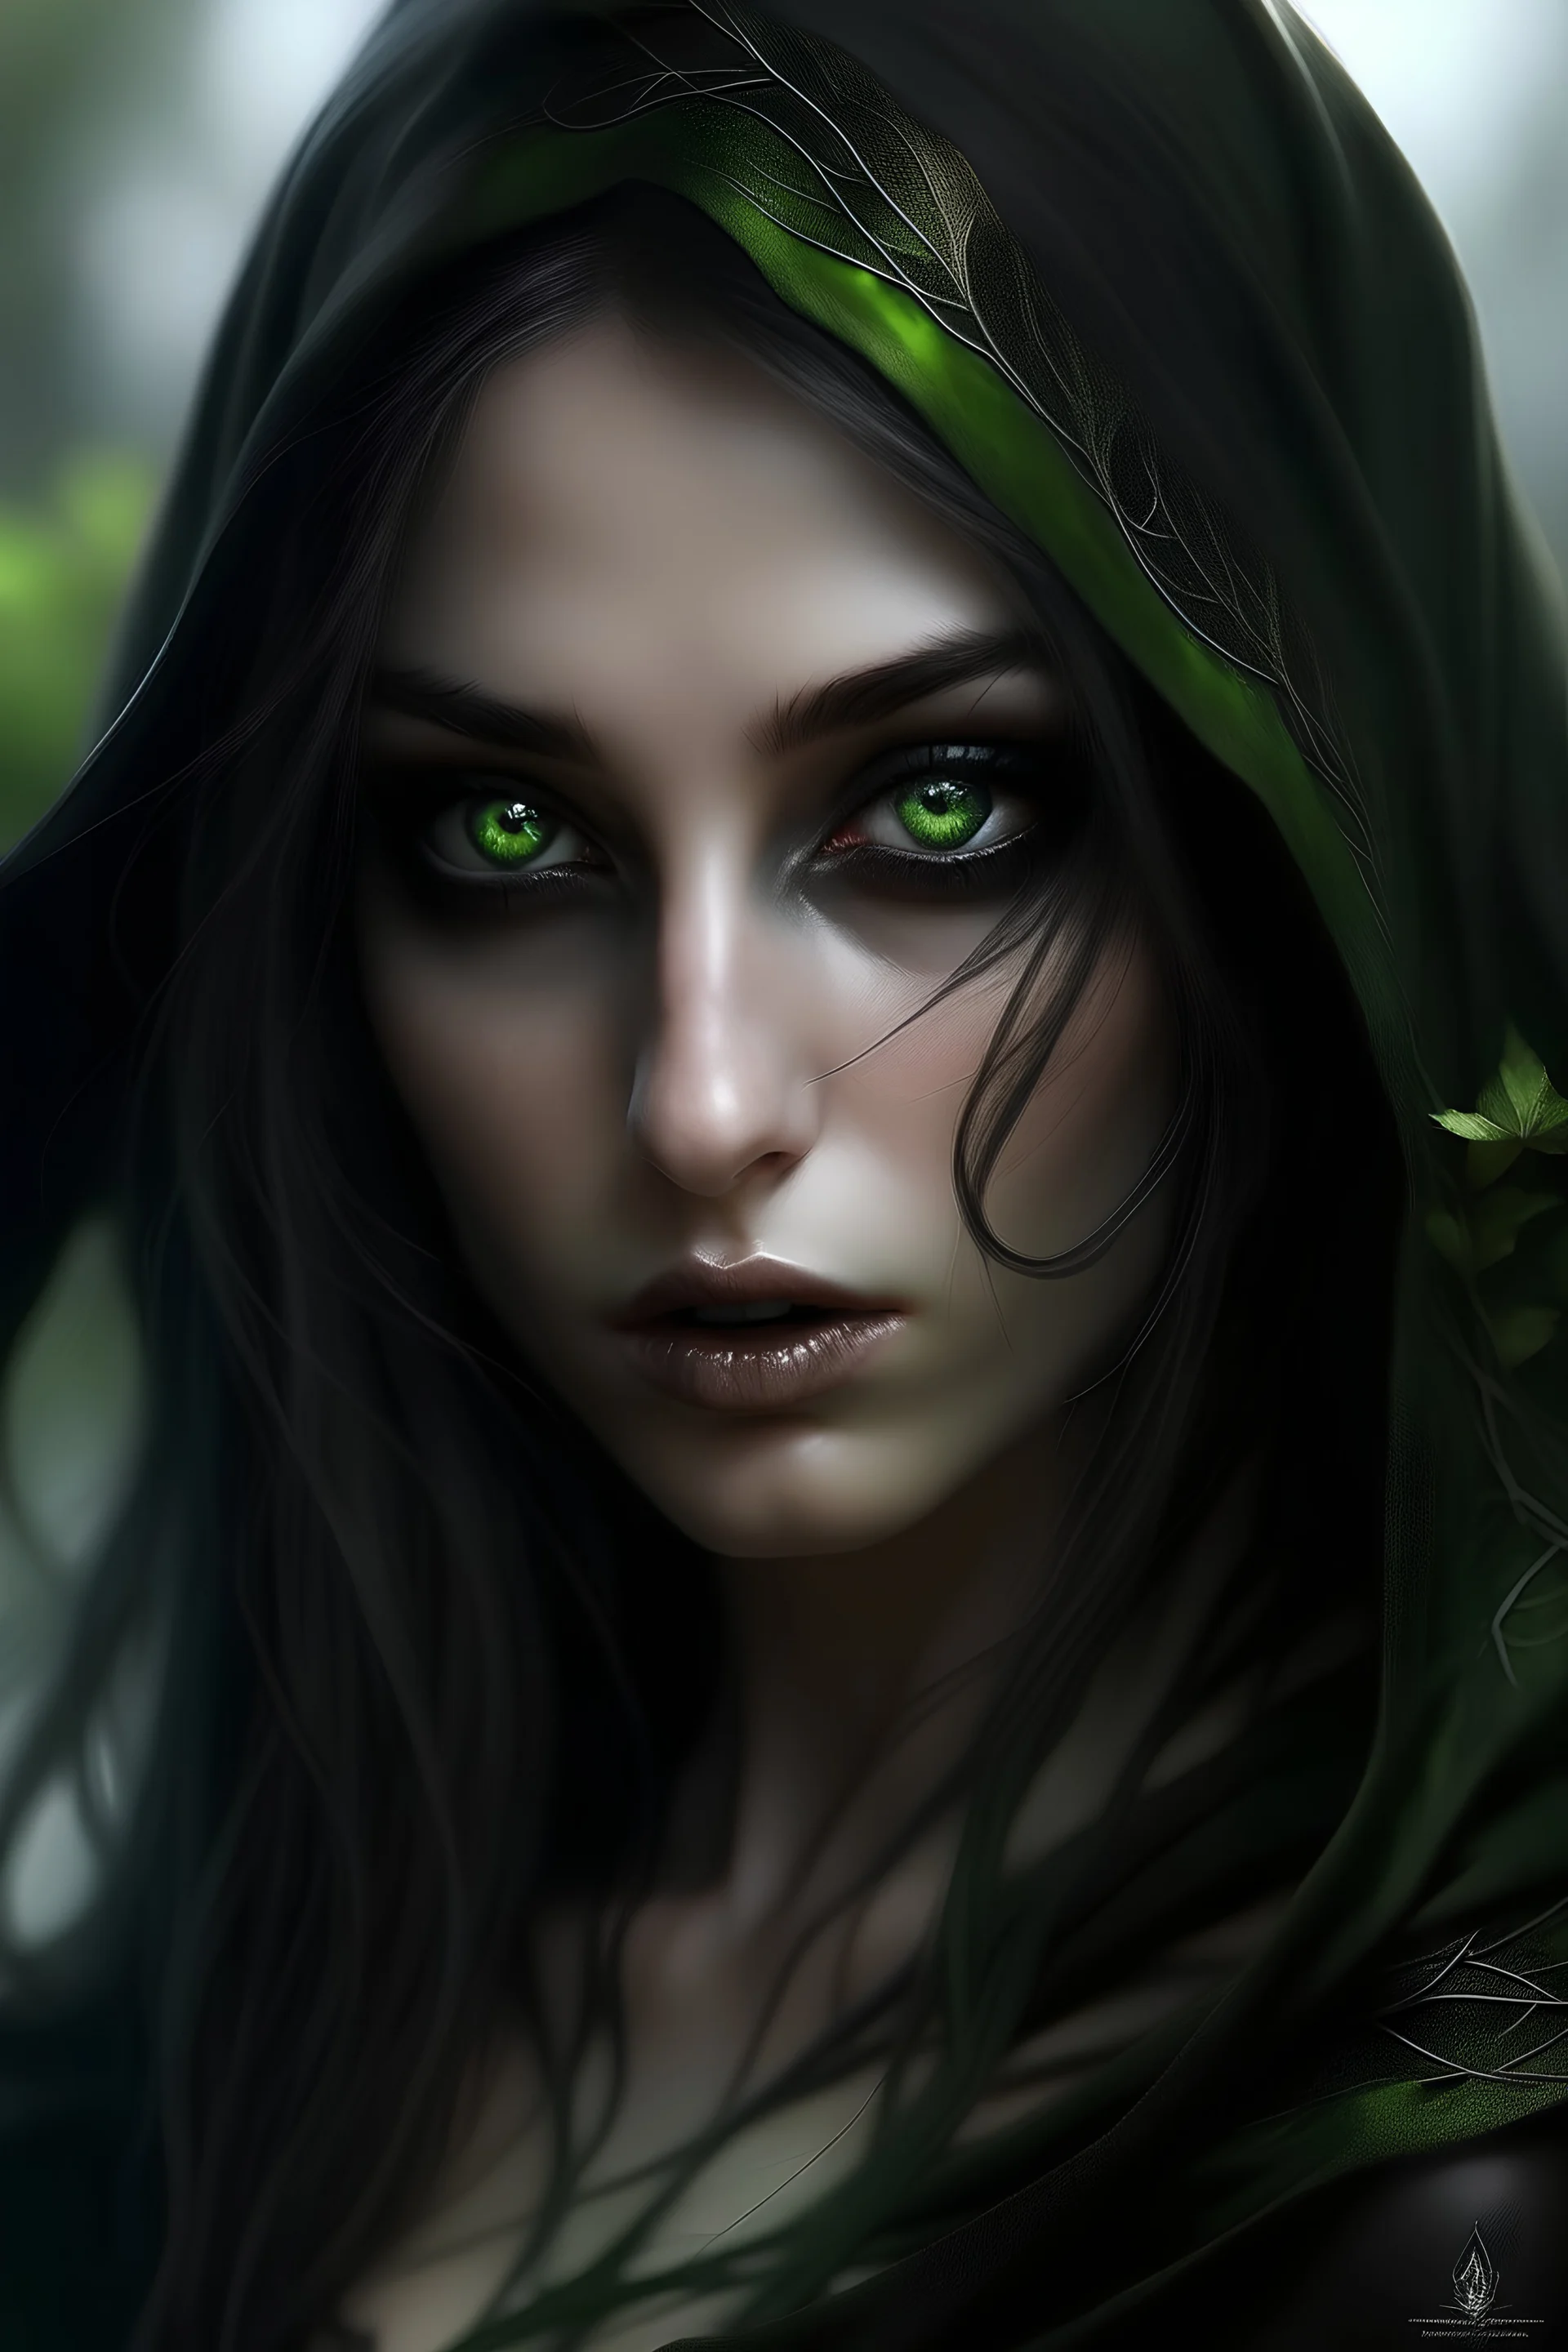 Immagine fantasy di un elfo femmina di pelle olivastra con occhi verdi e velo nero che lascia scoperti solo gli occhi